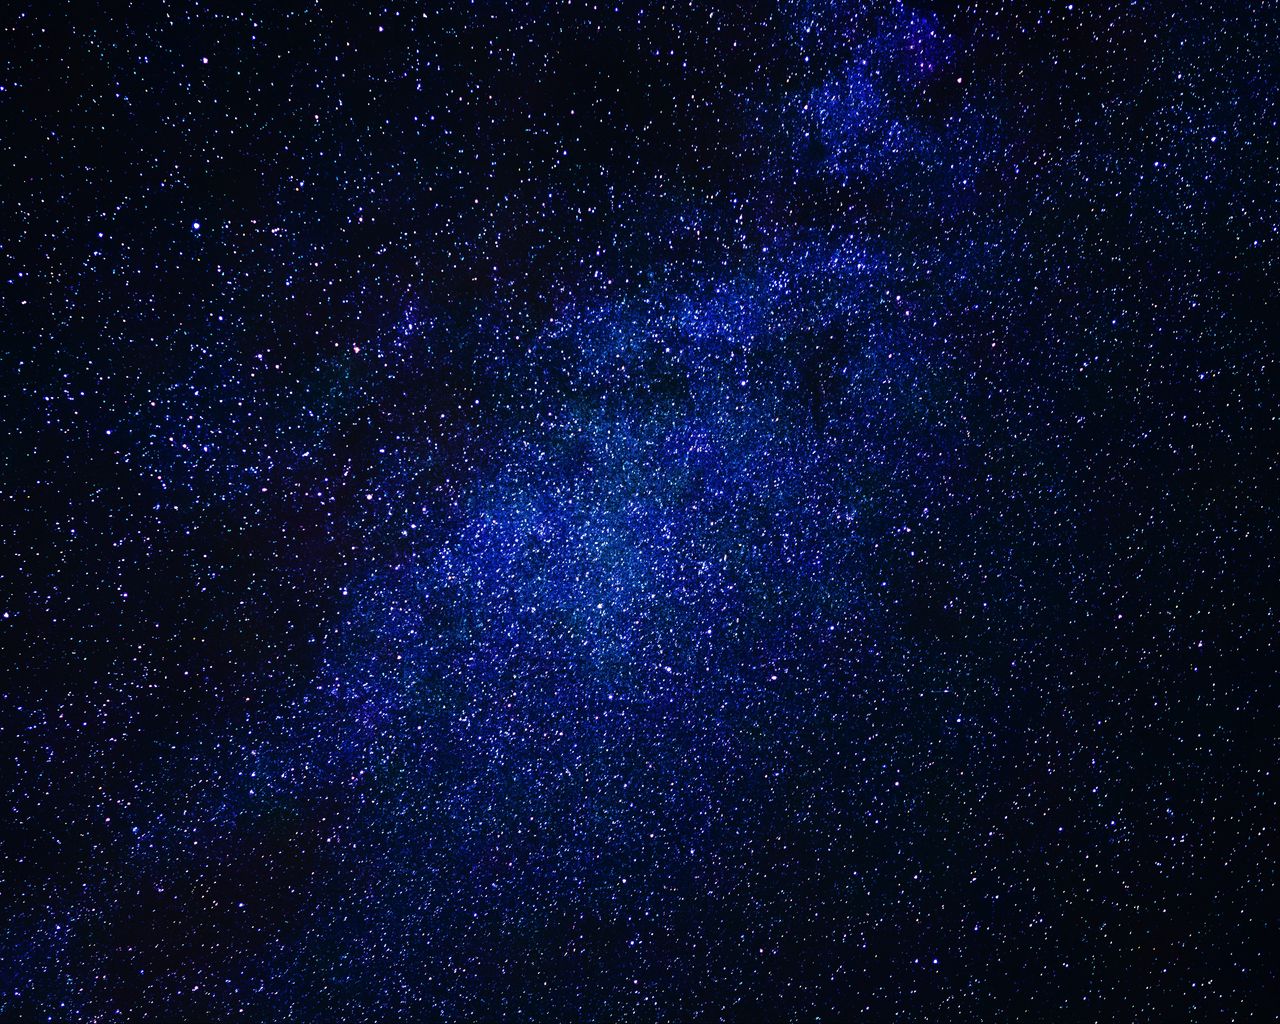 Bầu trời đêm thật kỳ diệu và đẹp đến kinh ngạc khi có sự xuất hiện của dải ngân hà Milky Way. Hãy cùng chiêm ngưỡng hình ảnh tuyệt đẹp này để tận hưởng không gian không gian hoang sơ và thánh thiện đến lạ thường.